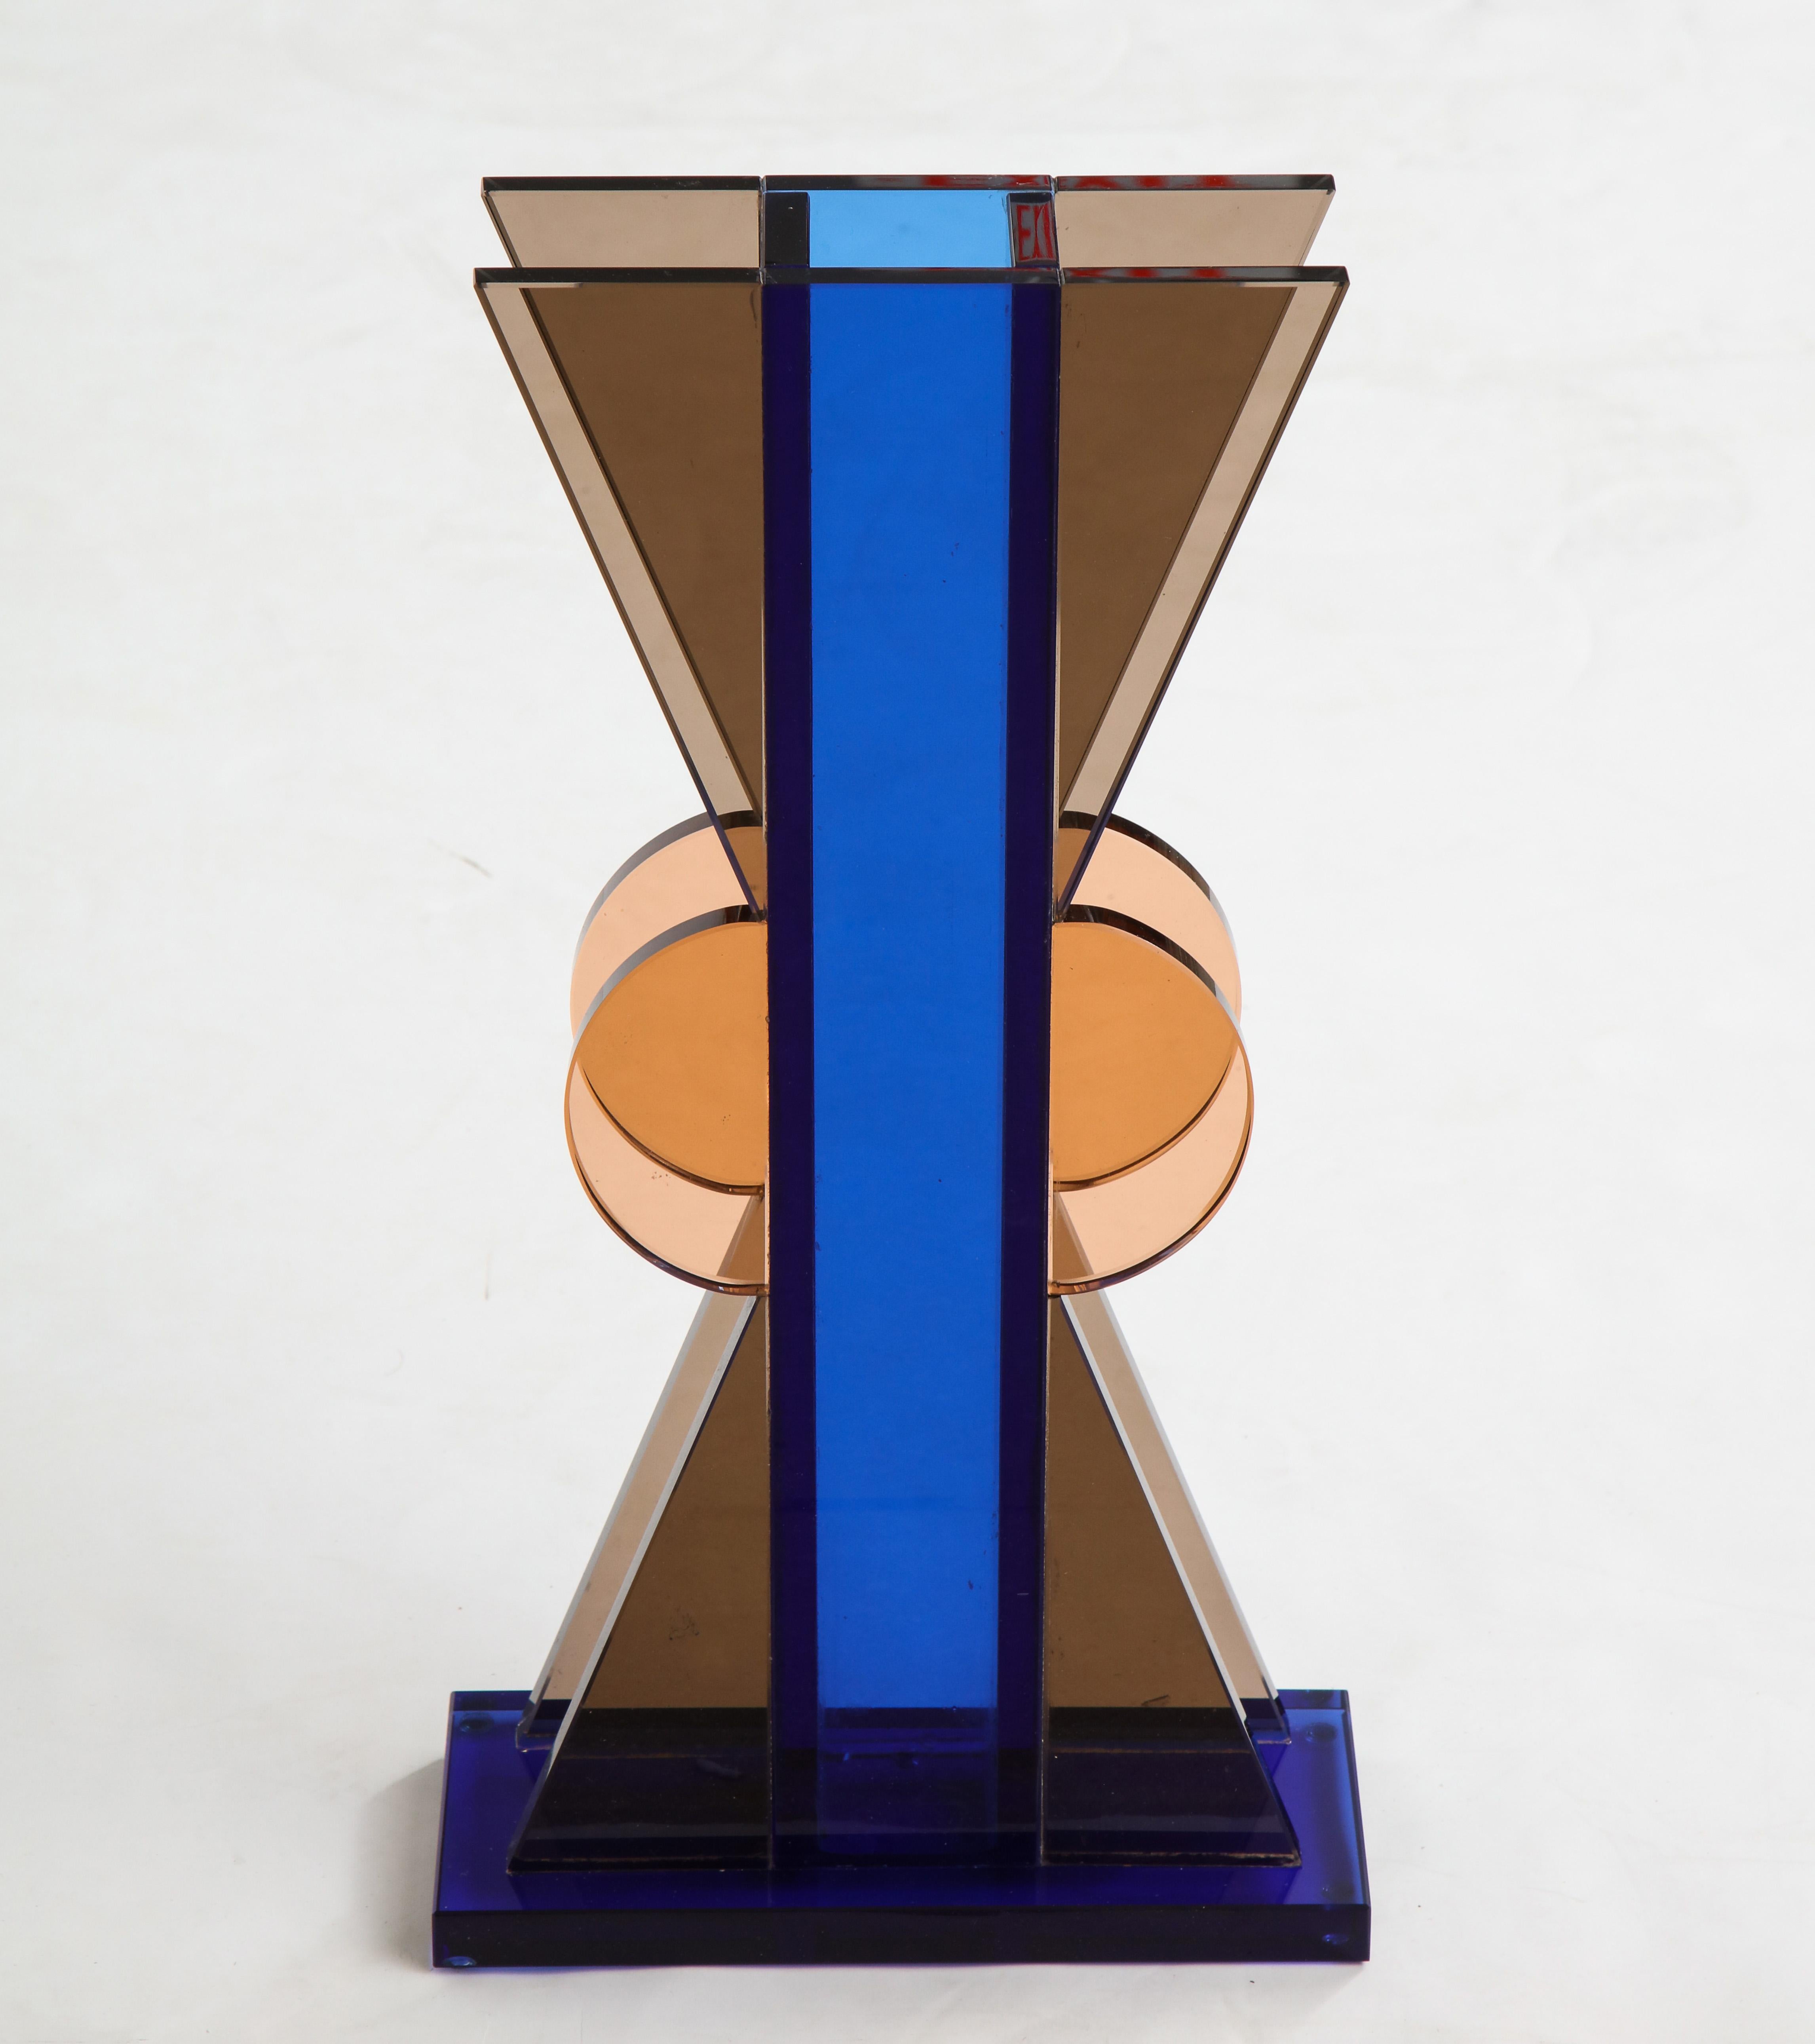 Ettore Sottsass pour Fontana Arte - Rare grand vase en cristal de couleur graphique composé d'un cylindre central carré bleu foncé avec des formes triangulaires brunes et semi-circulaires caramel attachées sur une base rectangulaire bleu foncé.

La